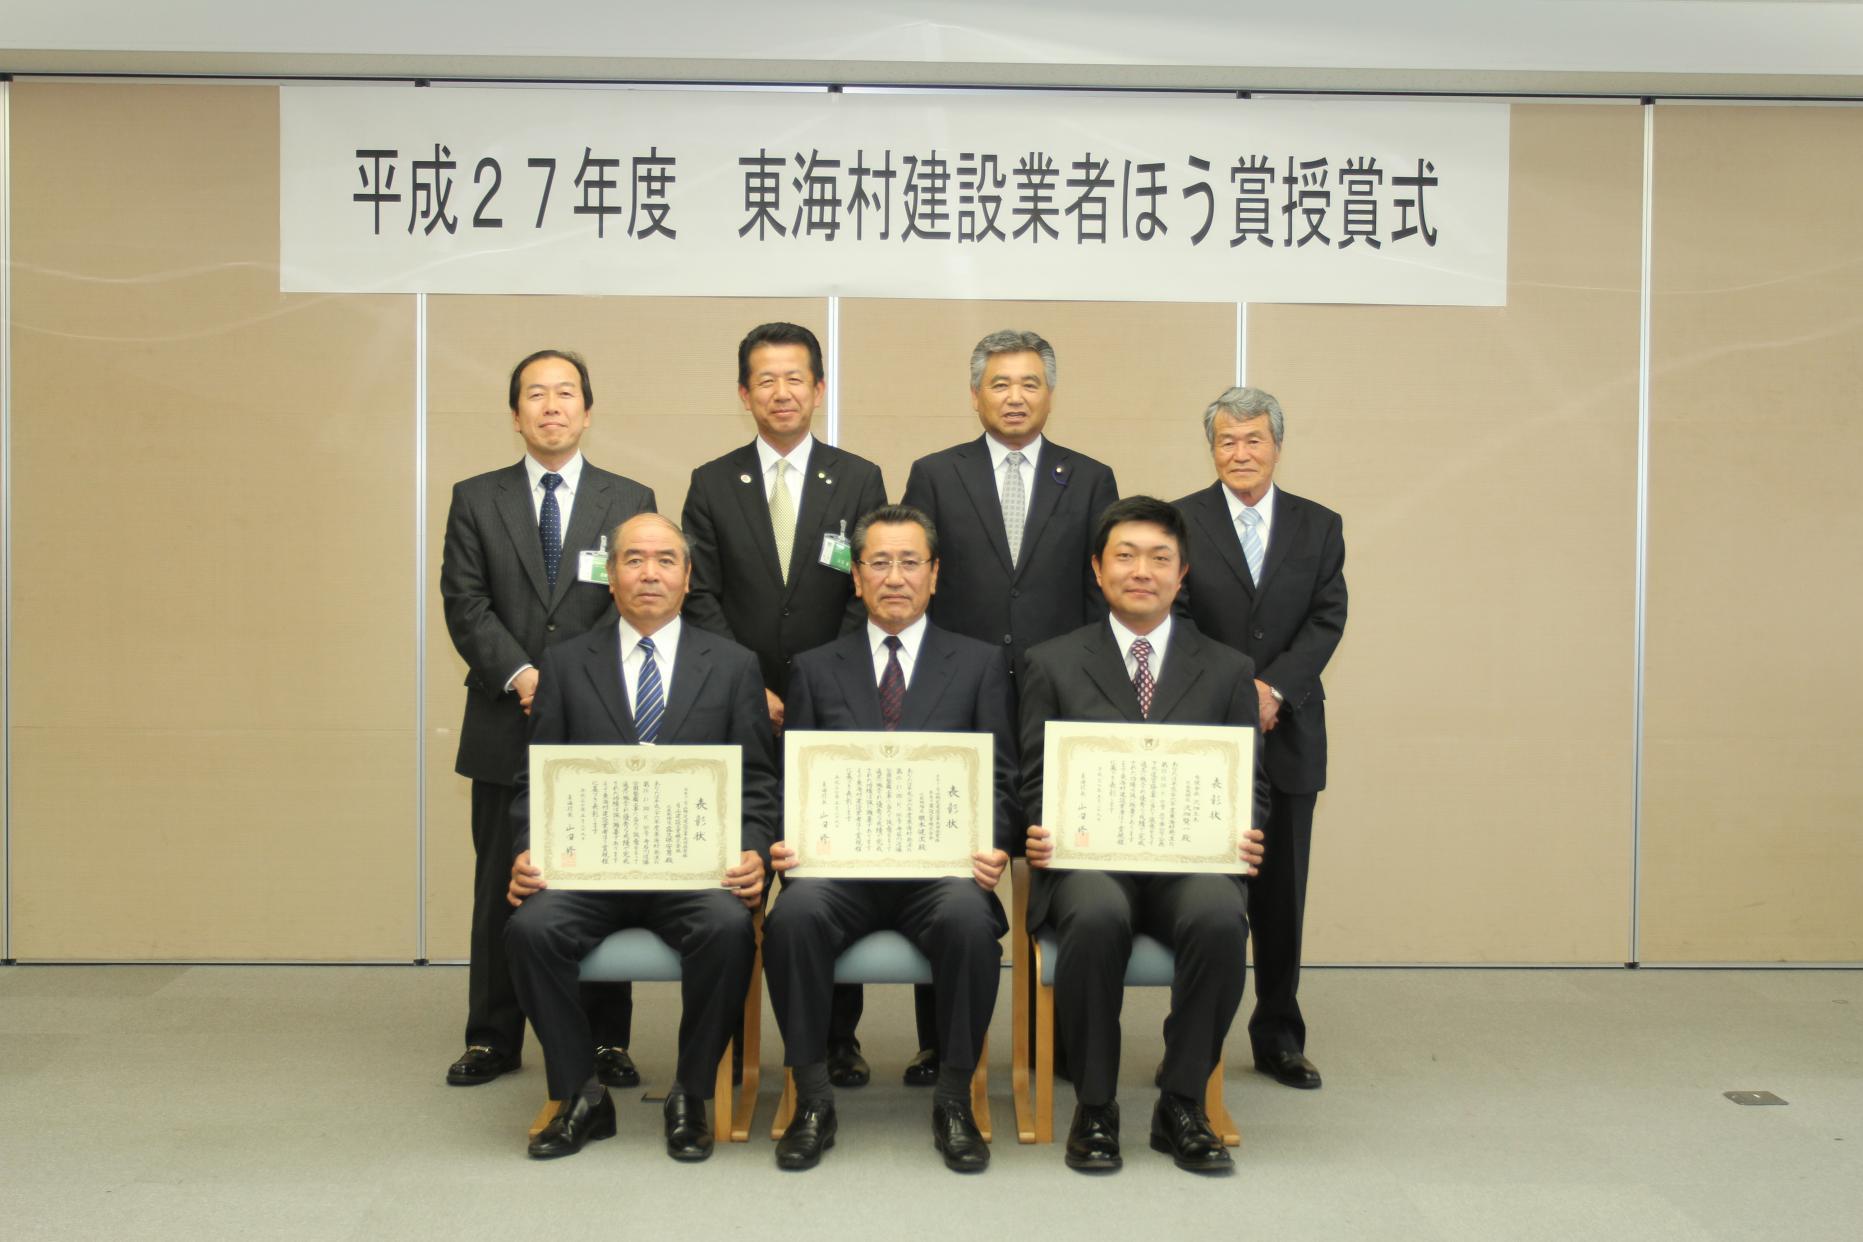 東海村建設業者ほう賞授賞式で前列にスーツ姿の男性3人が賞状を持って座り、後列にスーツ姿の男性が4人並んで立っている集合写真